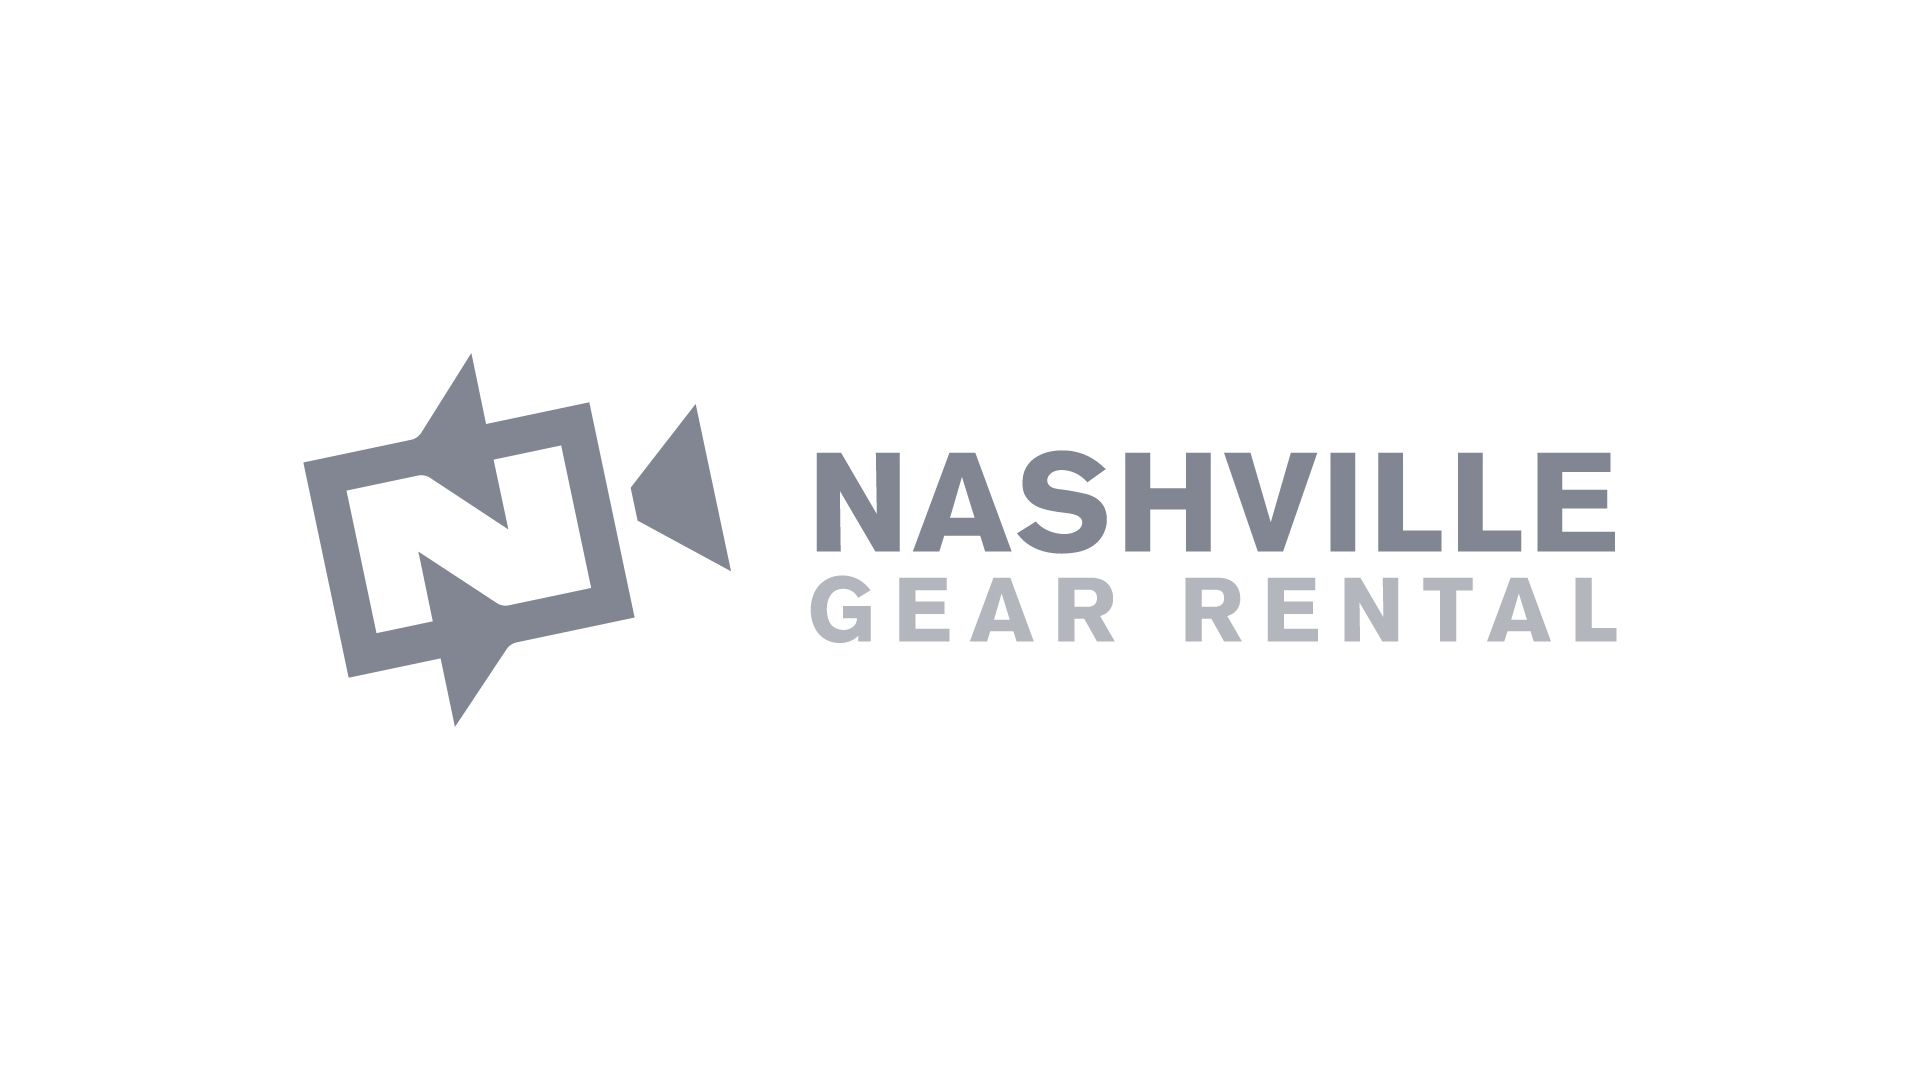 C Stand - Nashville Gear Rental